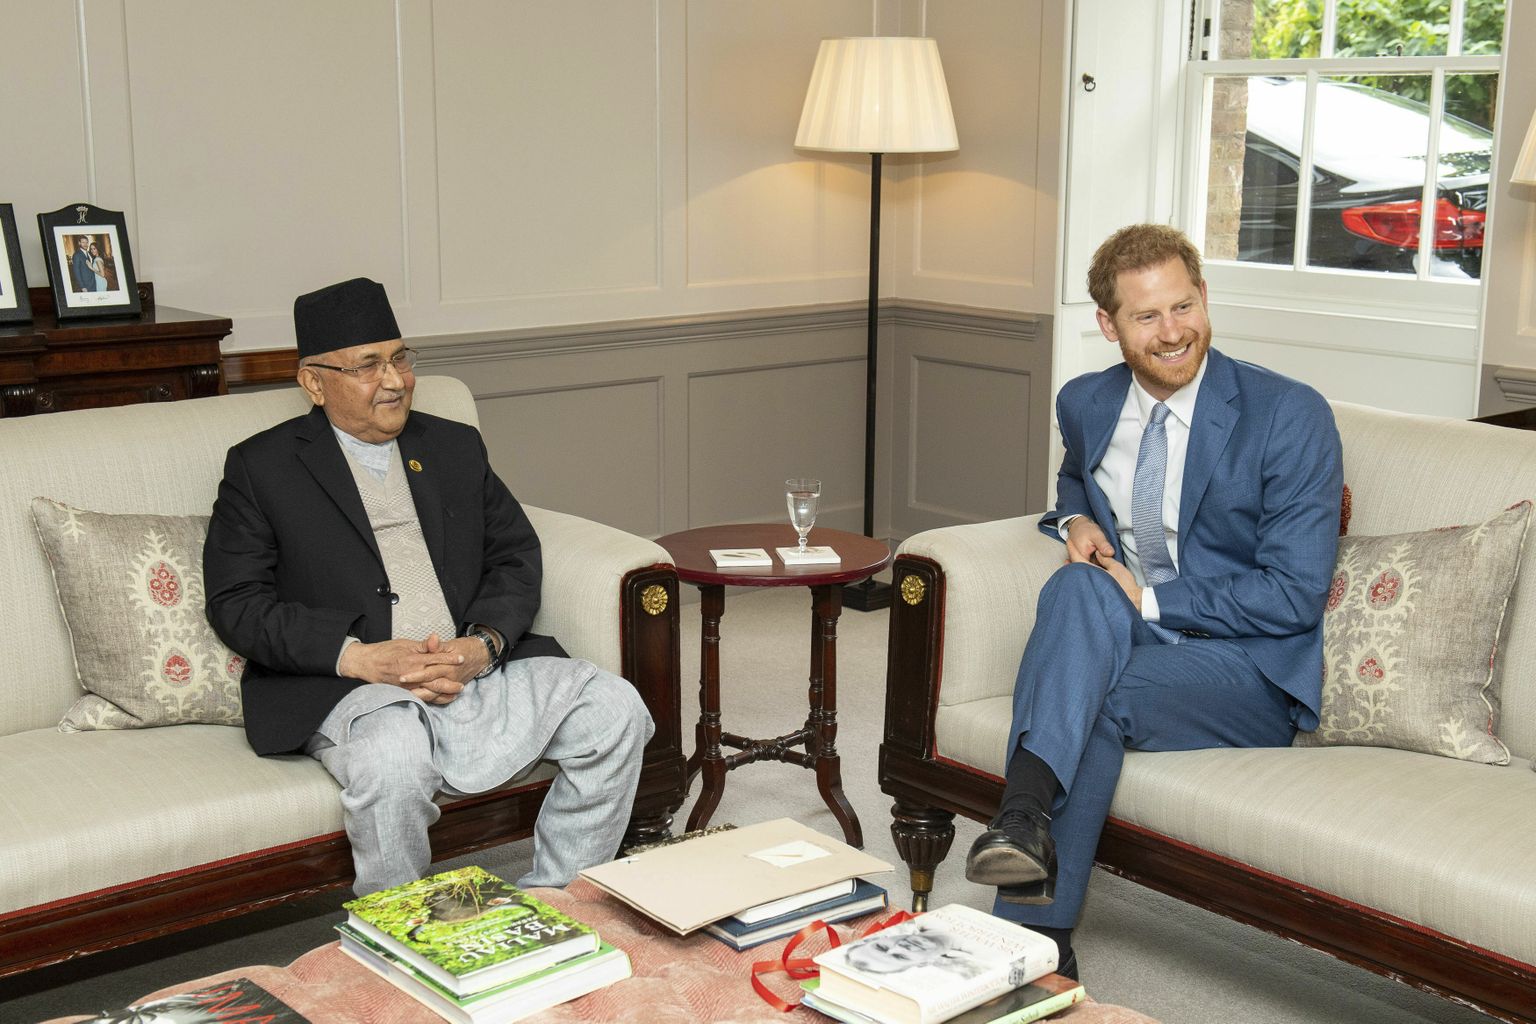 Prints Harry kohtus teisipäeval Kensingtoni palees Nepali peaministri KP Sharma Oliga.